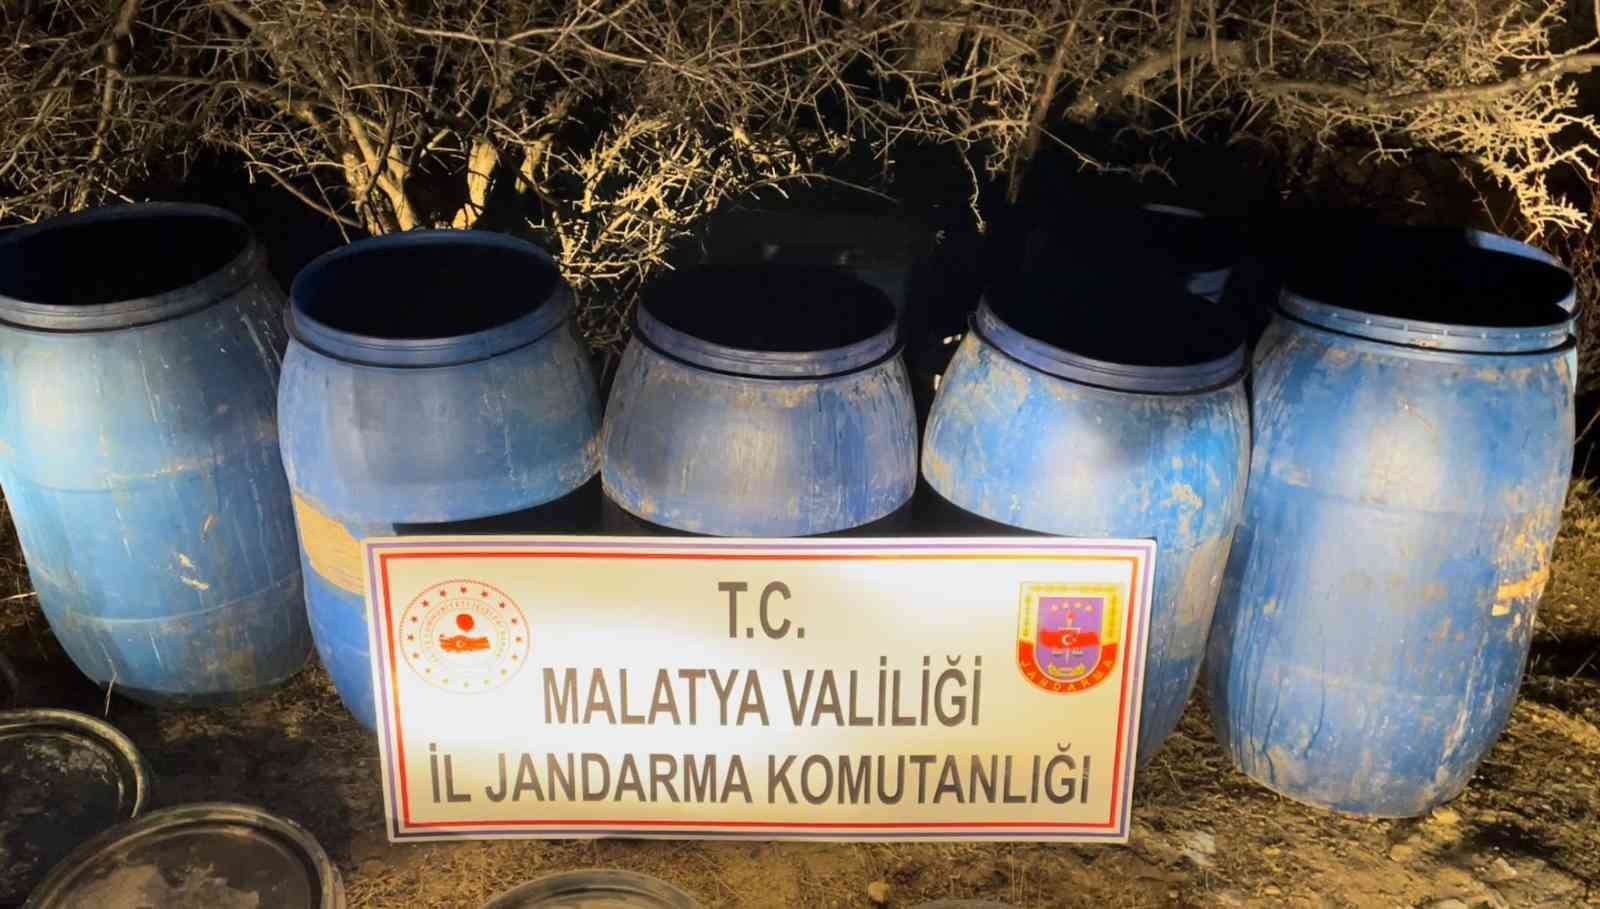 Malatya’da 2 bin litre sahte alkol ele geçirildi #malatya